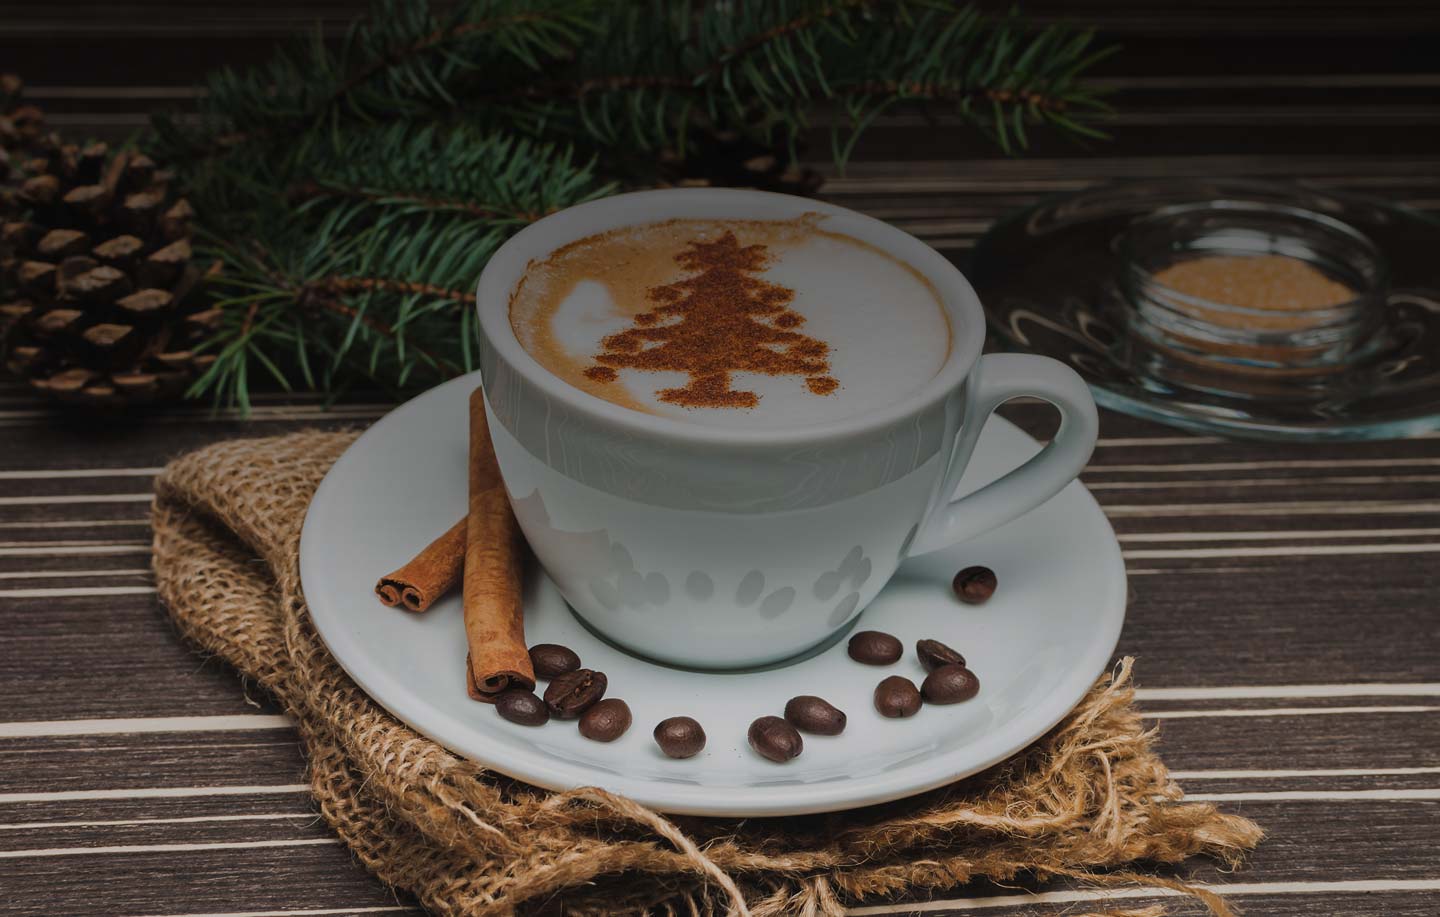 I migliori regali di Natale per gli amanti del caffè